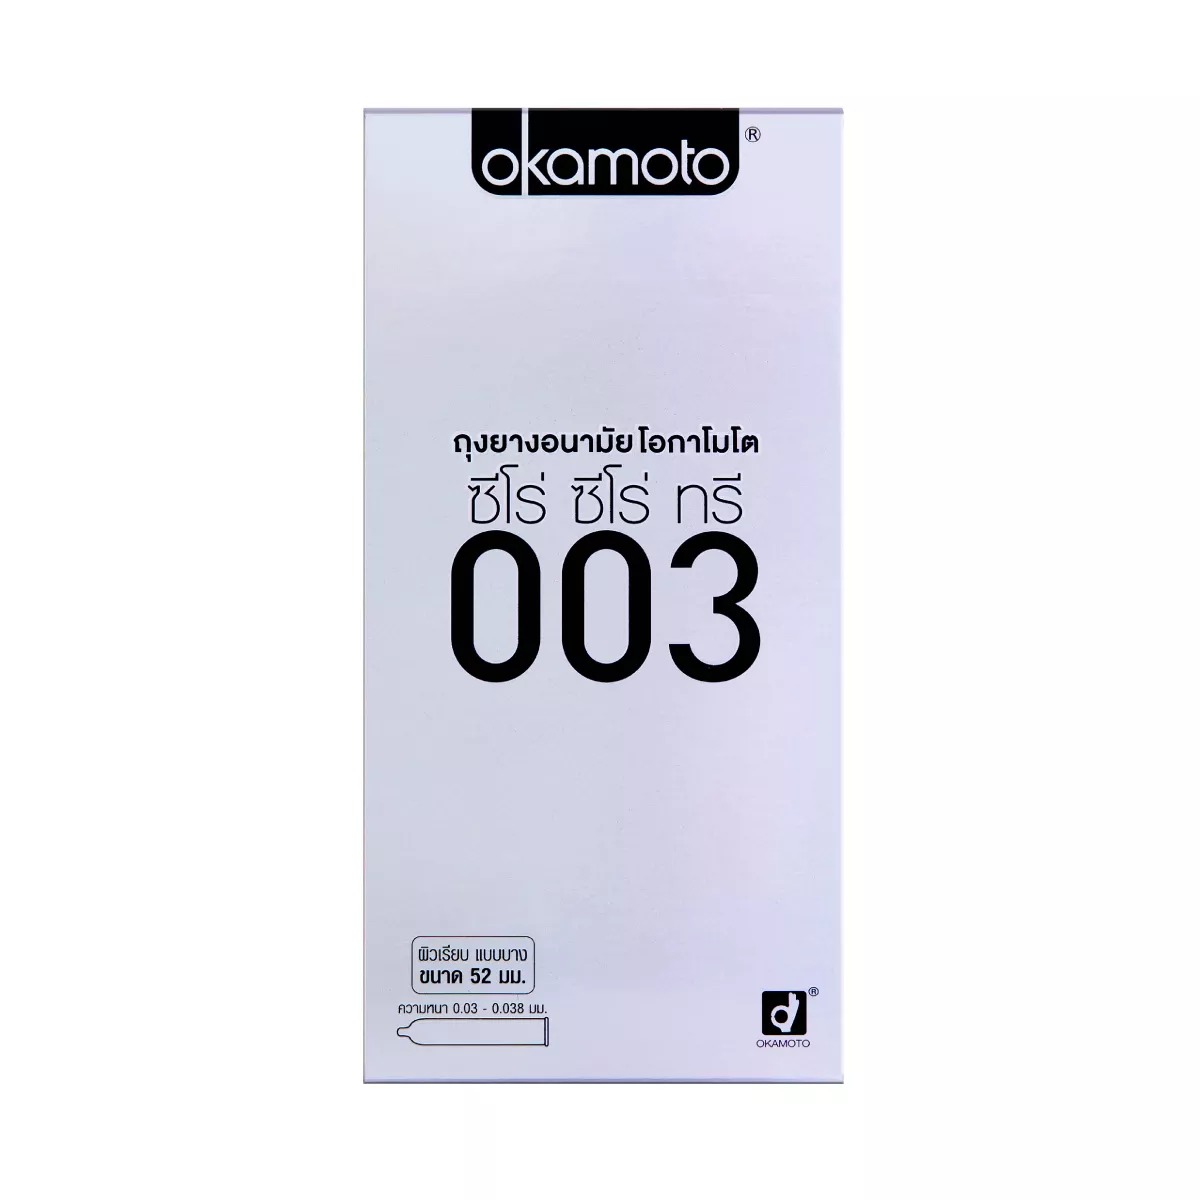 ถุงยางอนามัย โอกาโมโต้ ซีโร่ ซีโร่ ทรี 0.03 (ลิขสิทธิ์ไทย) / Okamoto 003 แพ็ค 10 ชิ้น (บางและคุ้ม) ไซส์ 52 (XCOK109)